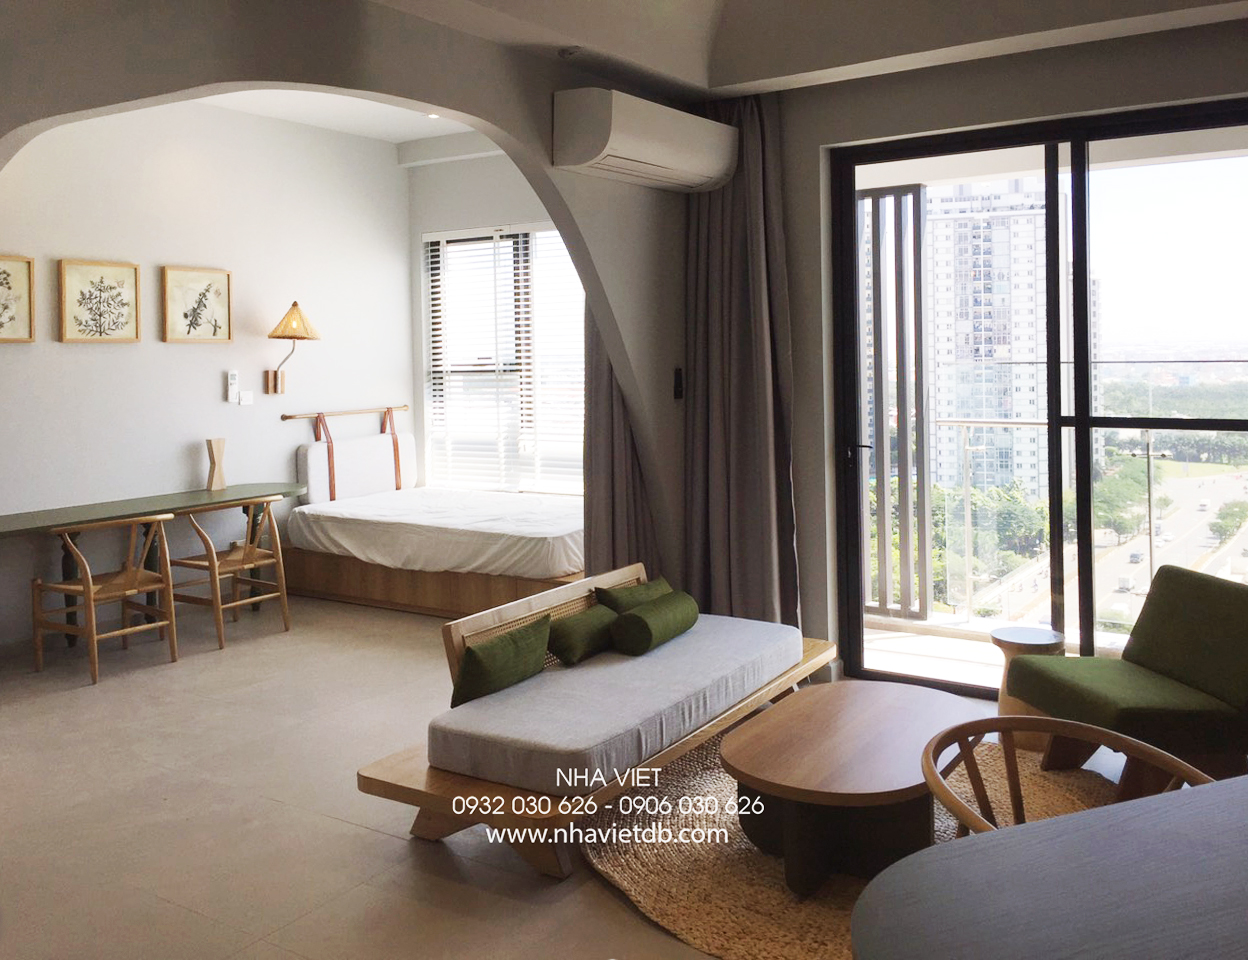 Hoàn thiện nội thất phòng khách, khu vực làm việc, khu vực ngủ cho khách Căn hộ chung cư Hưng Phú Cần Thơ phong cách Wabi Sabi